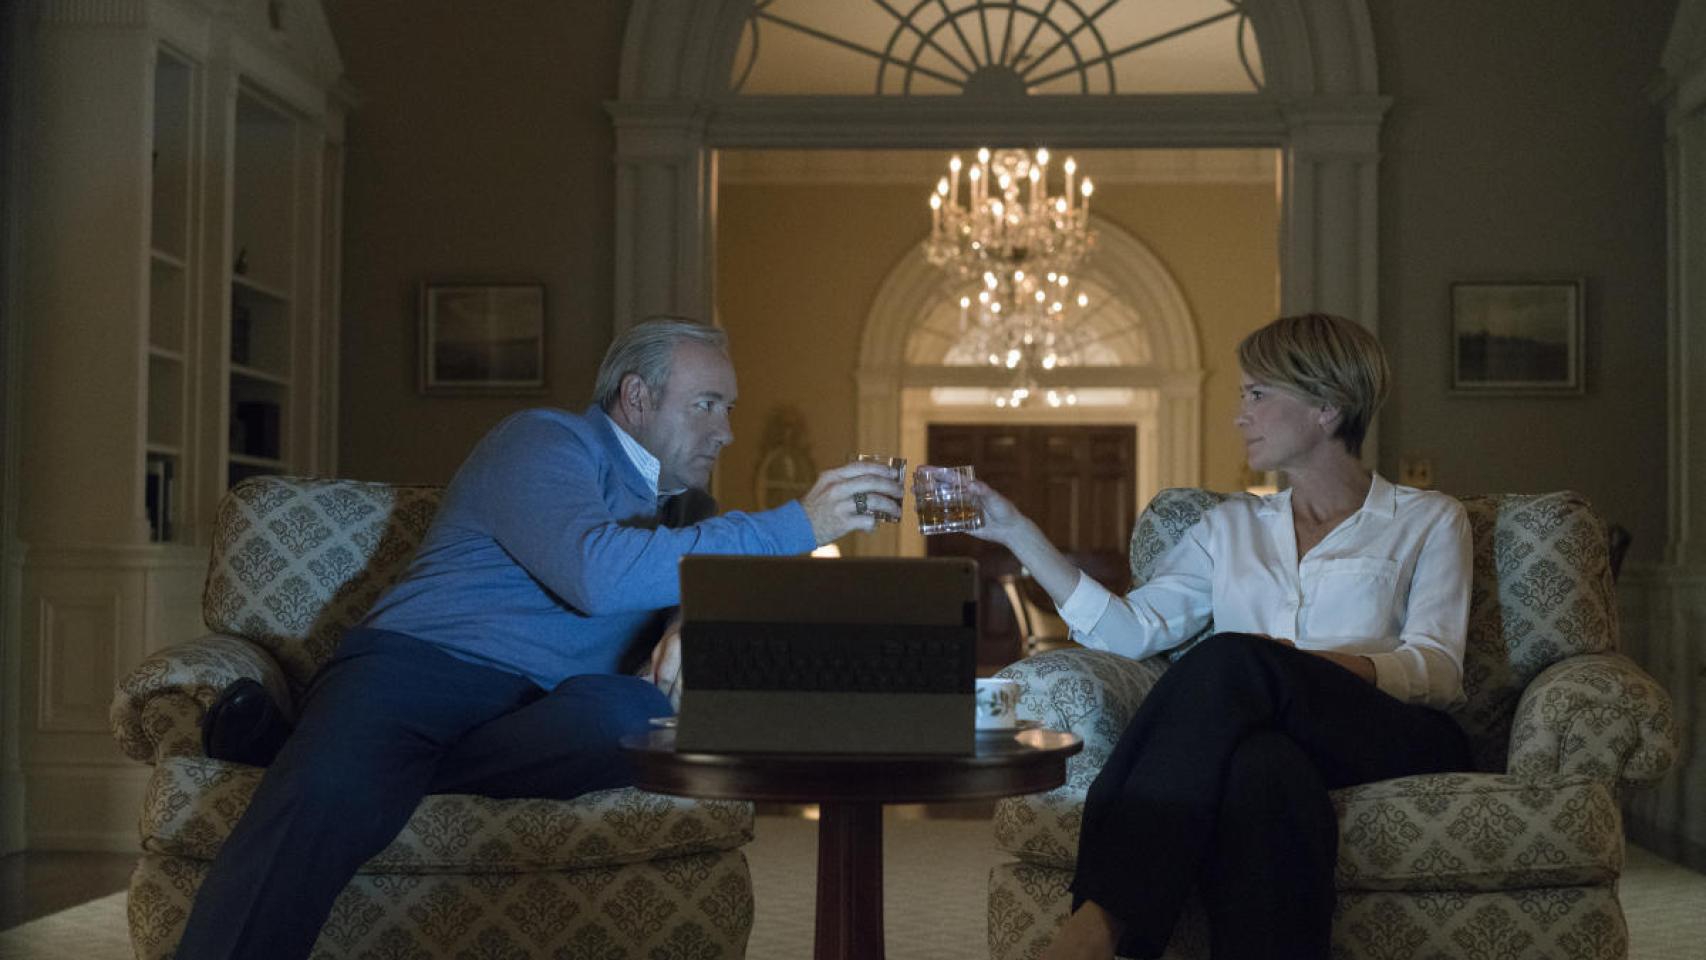 Netflix publica las primeras imágenes de la quinta temporada de 'House of Cards'